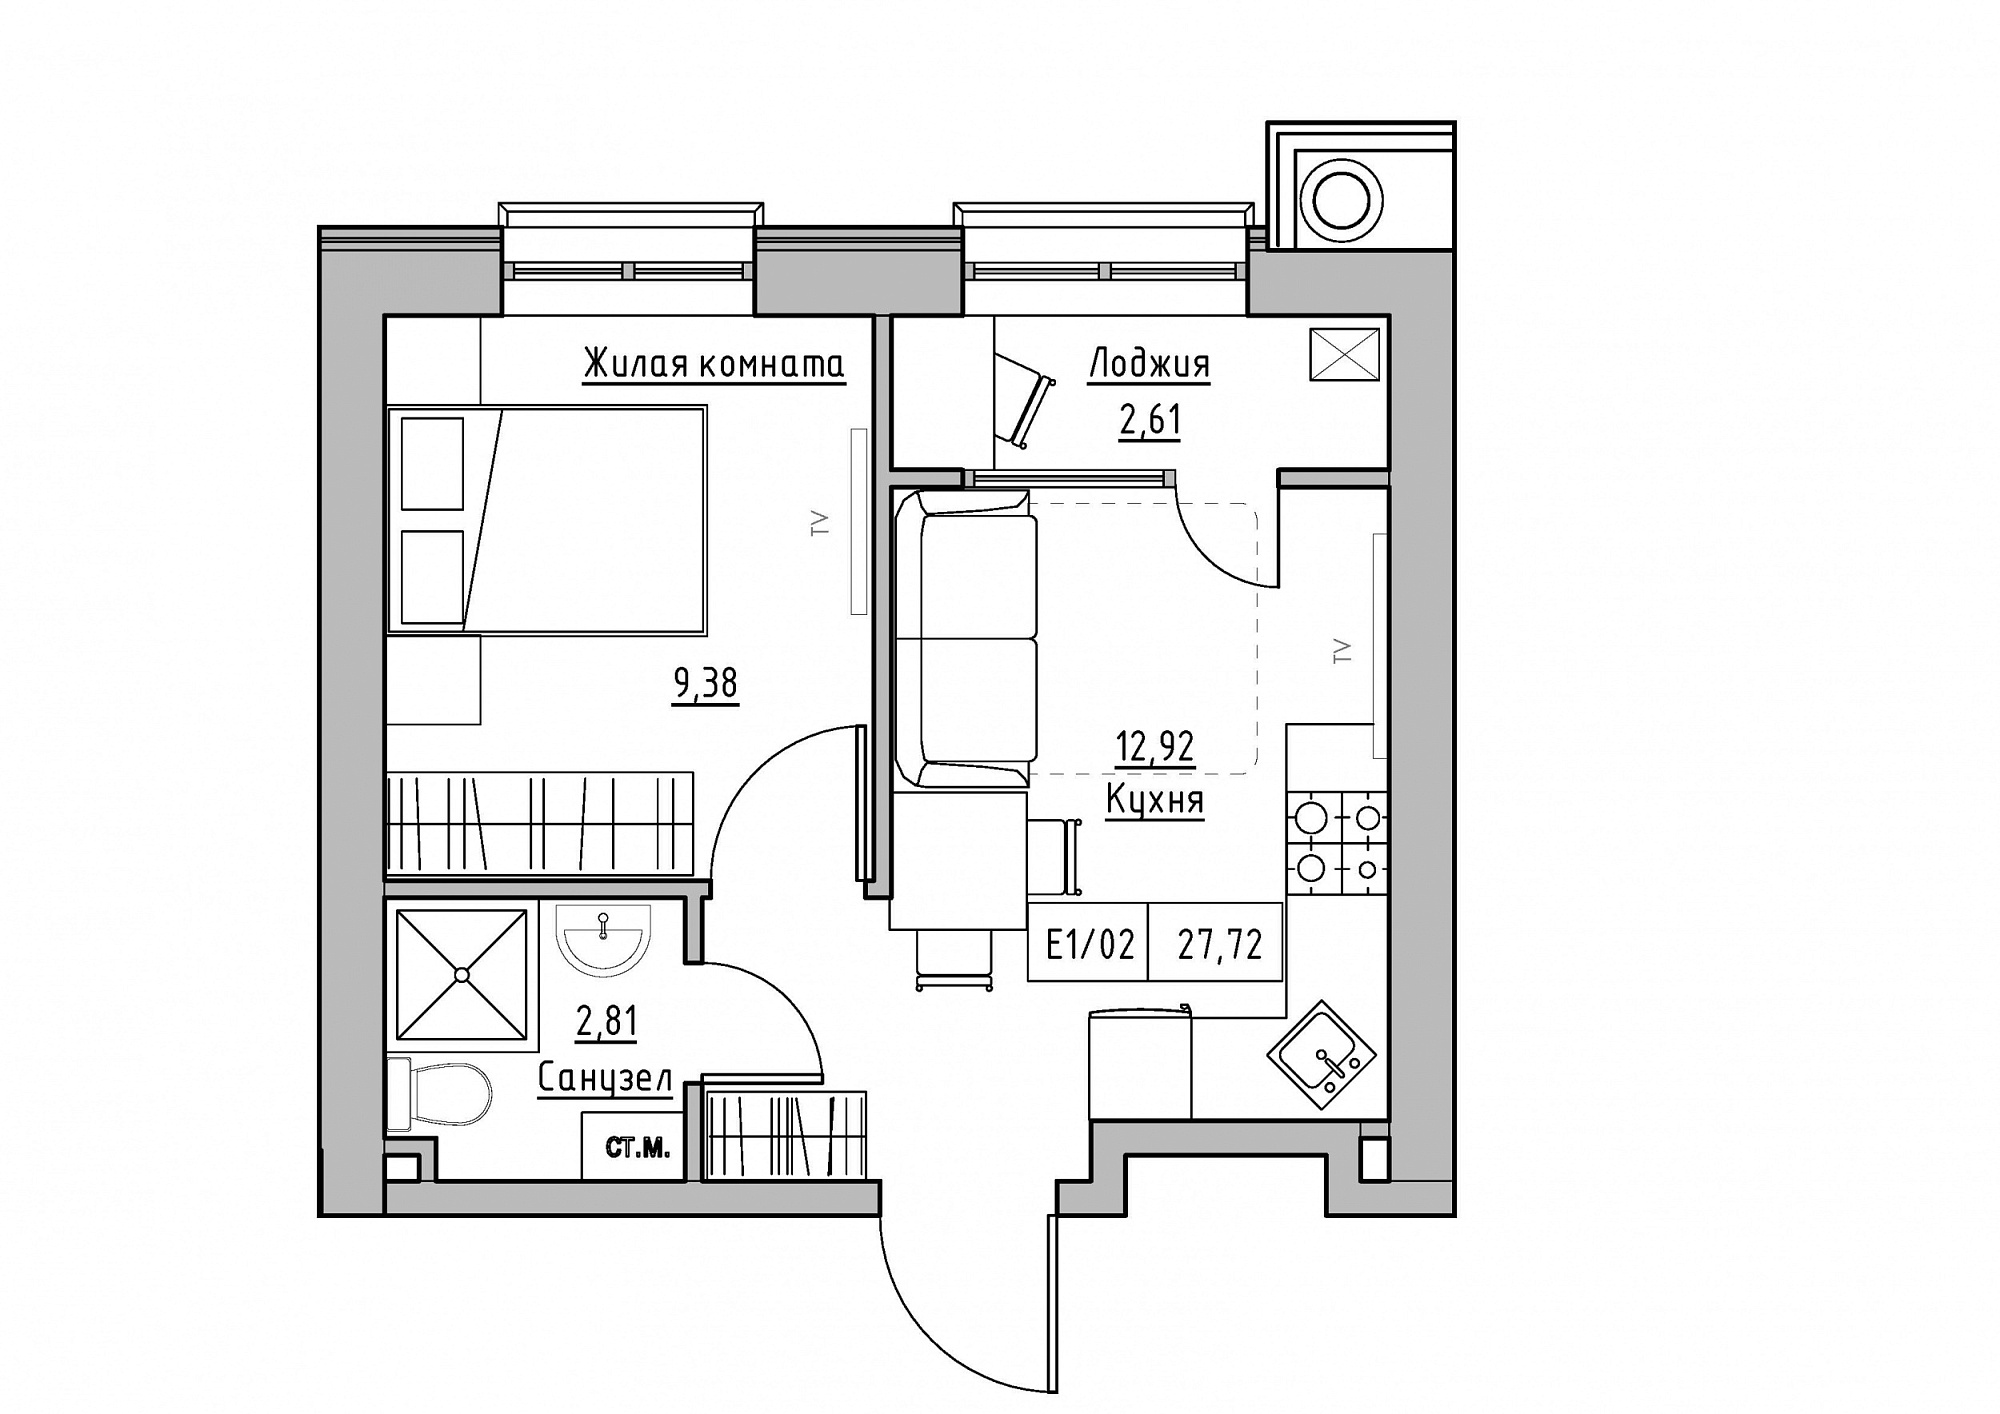 Планировка 1-к квартира площей 27.72м2, KS-012-05/0001.